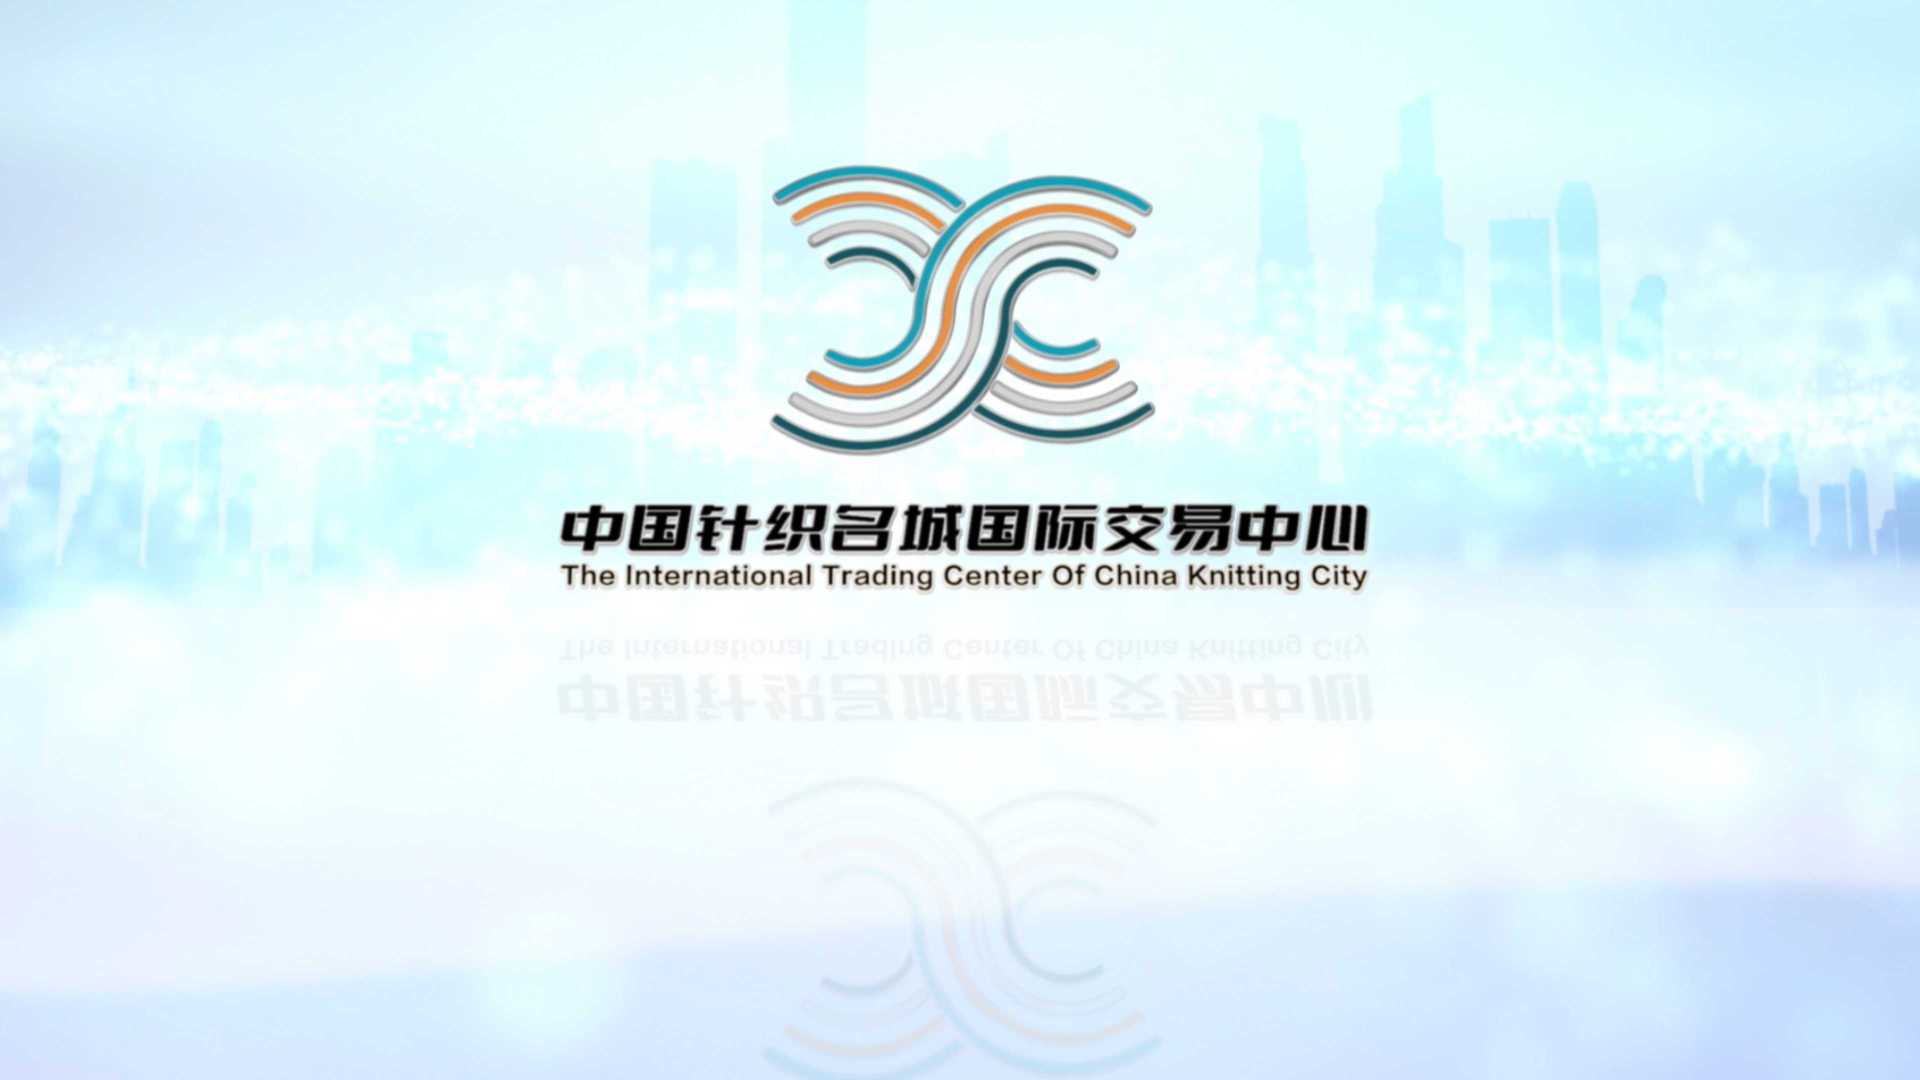 《中国针织名城国际交易中心》招商宣传片